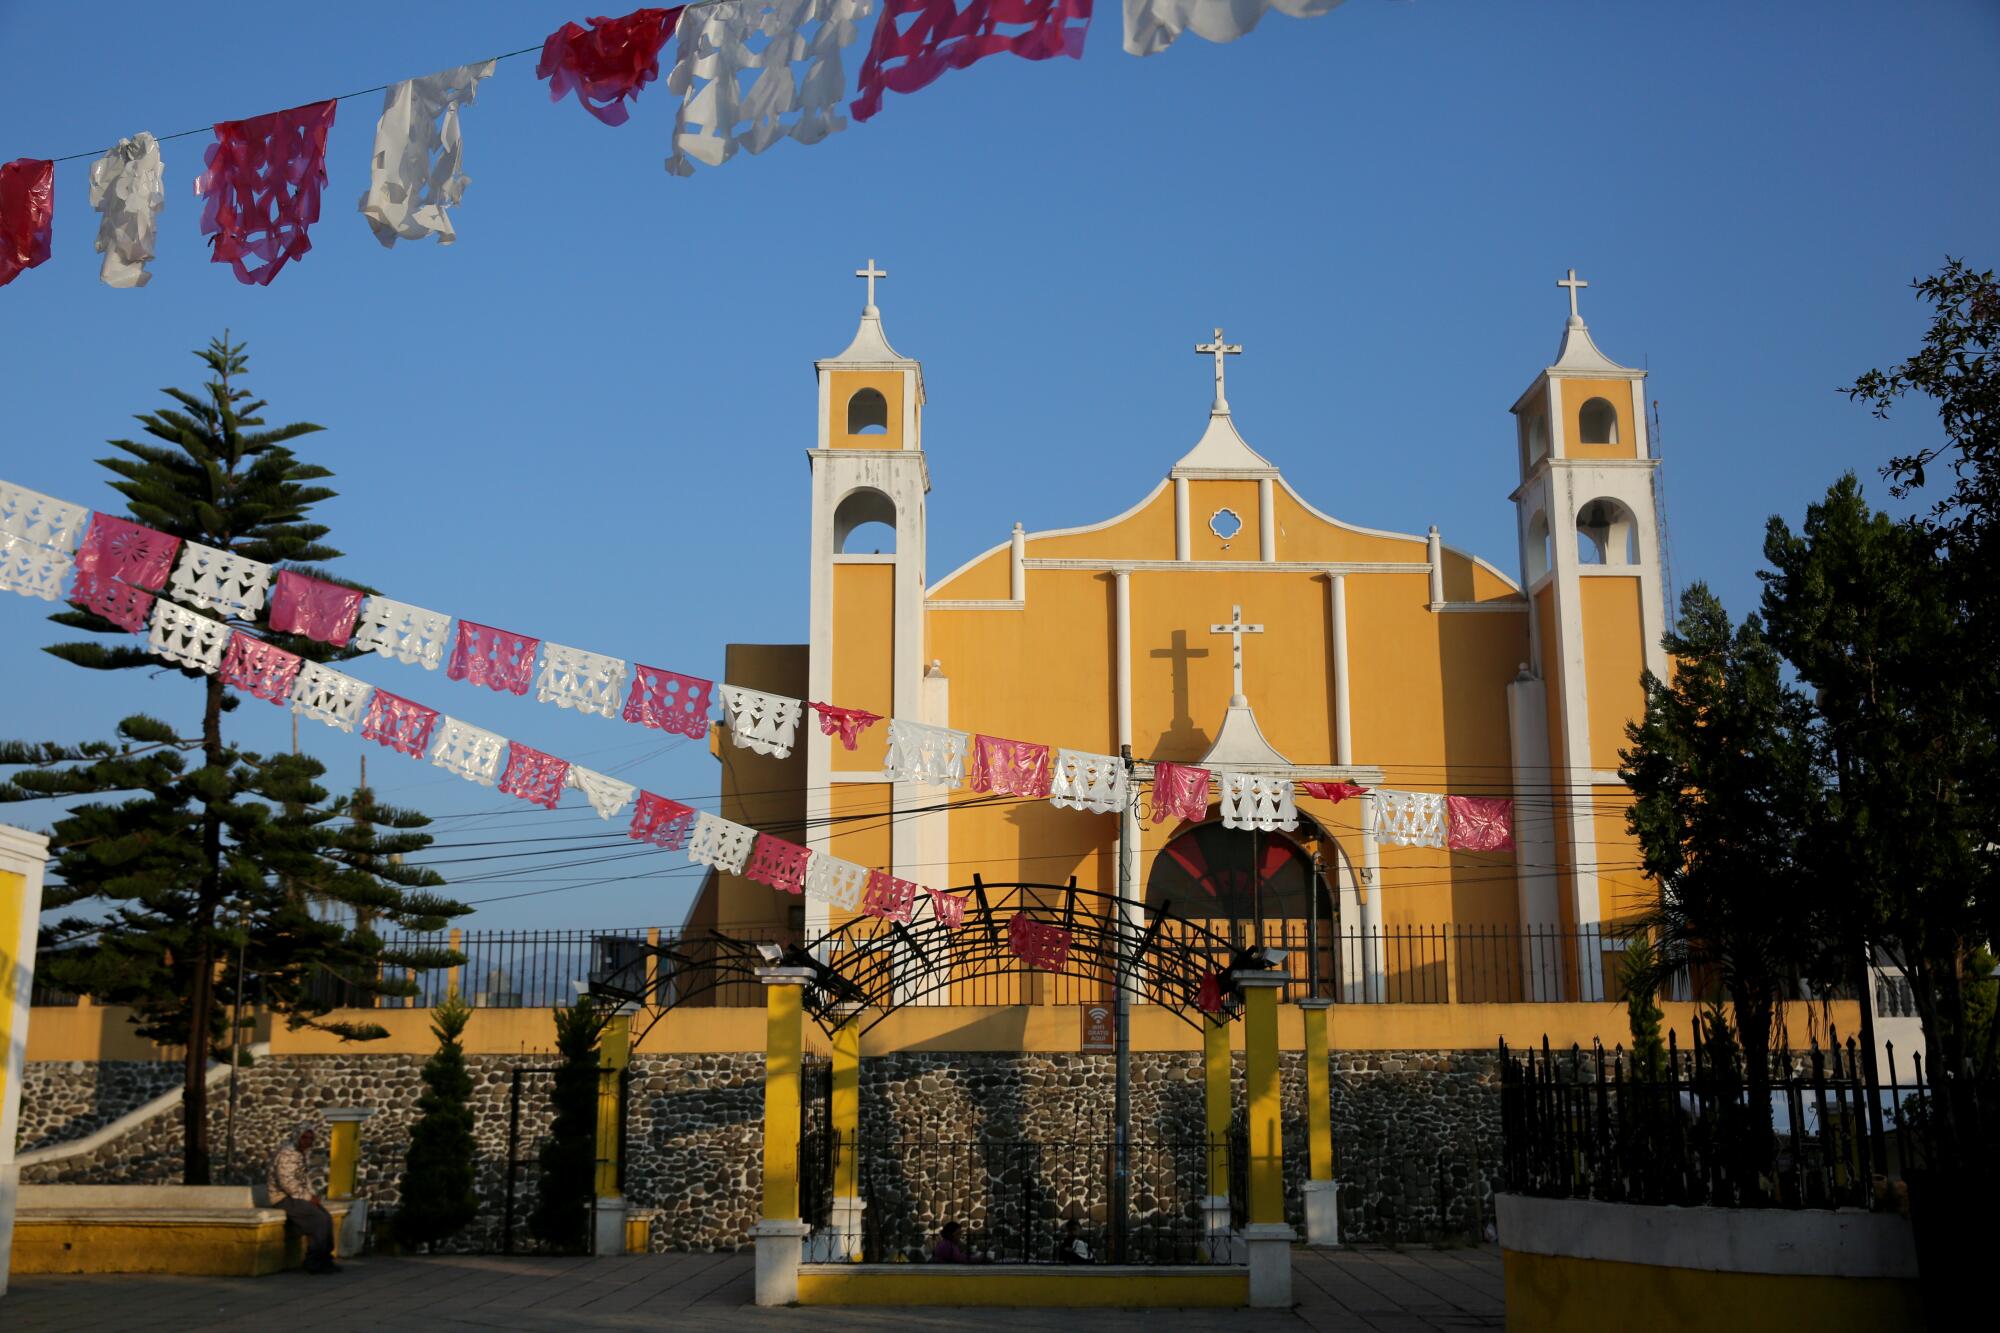 La iglesia católica Santa Cruz mira hacia el oriente en dirección al parque central de Comitancillo.